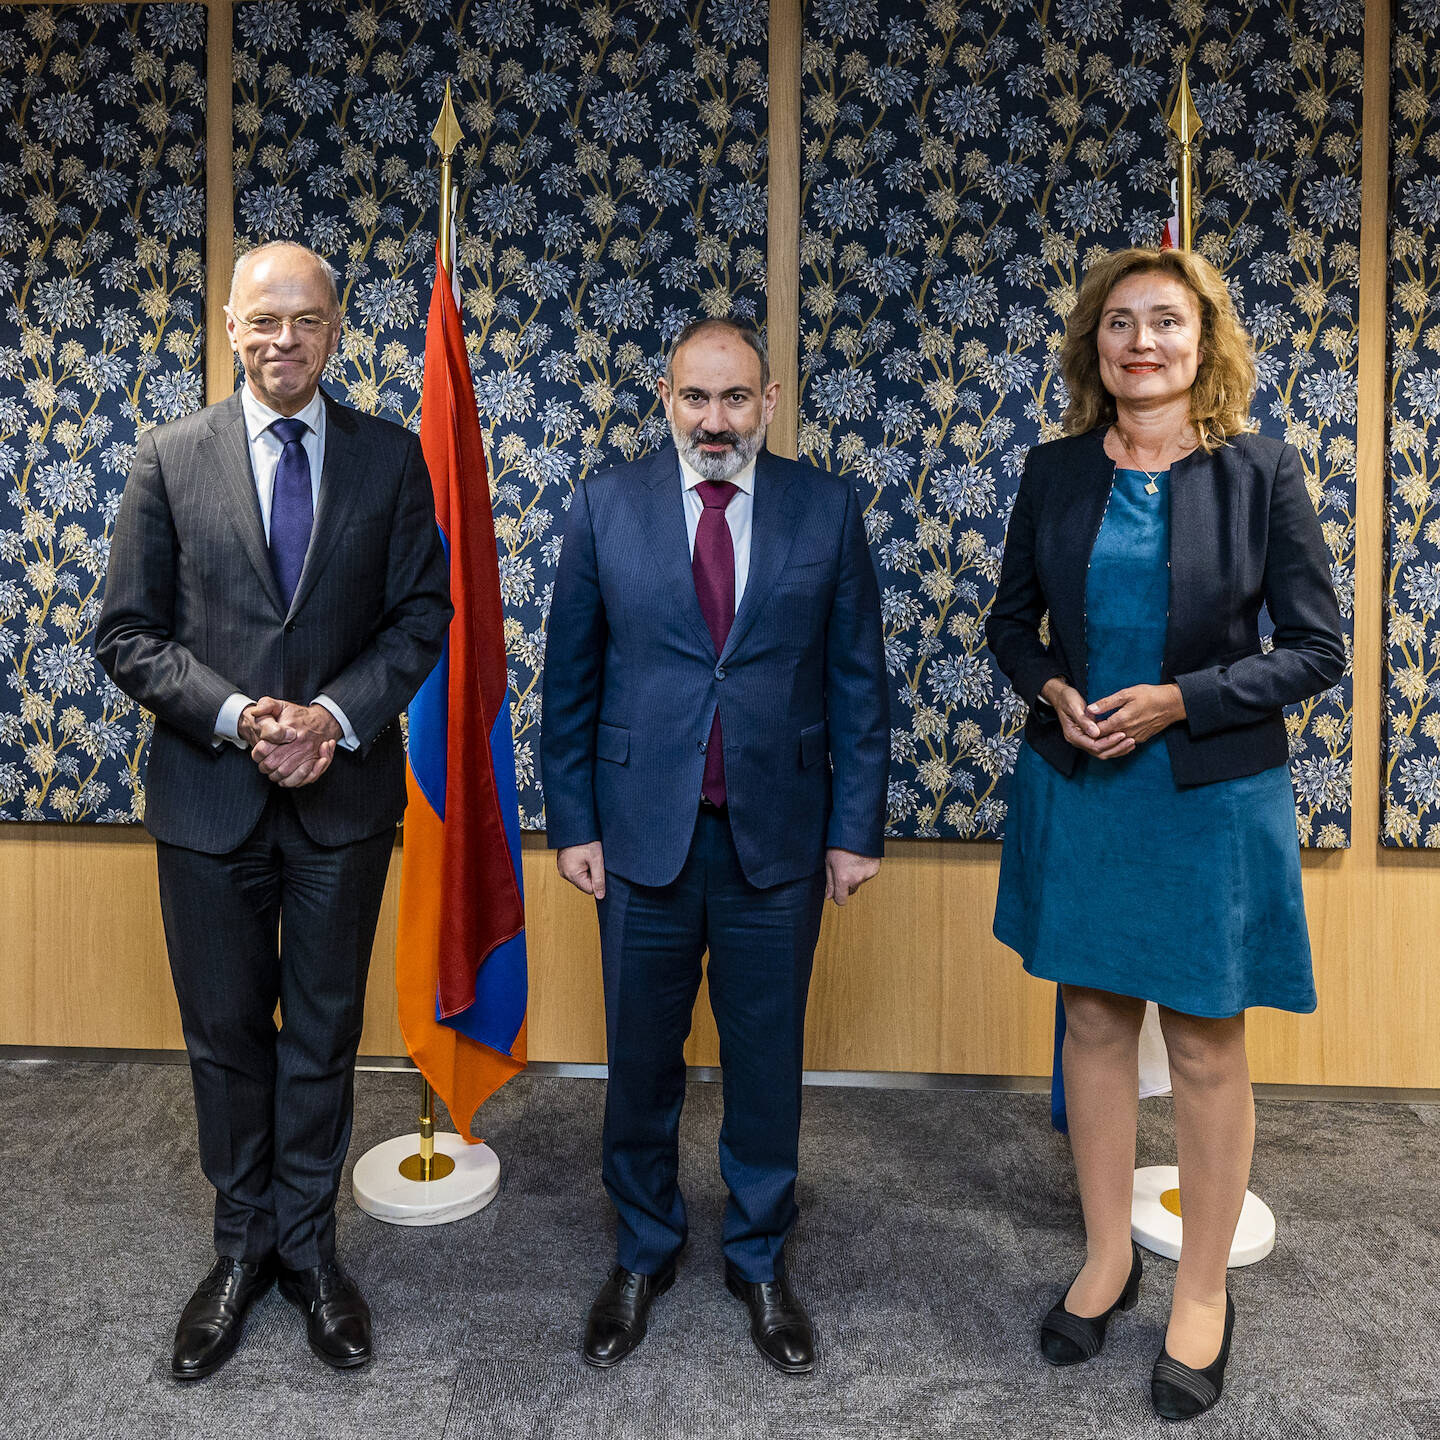 Eerste Kamervoorzitter Jan Anthonie Bruijn, minister-president Nikol Pashinyan van Armenië, Tweede Kamervoorzitter Vera Bergkamp